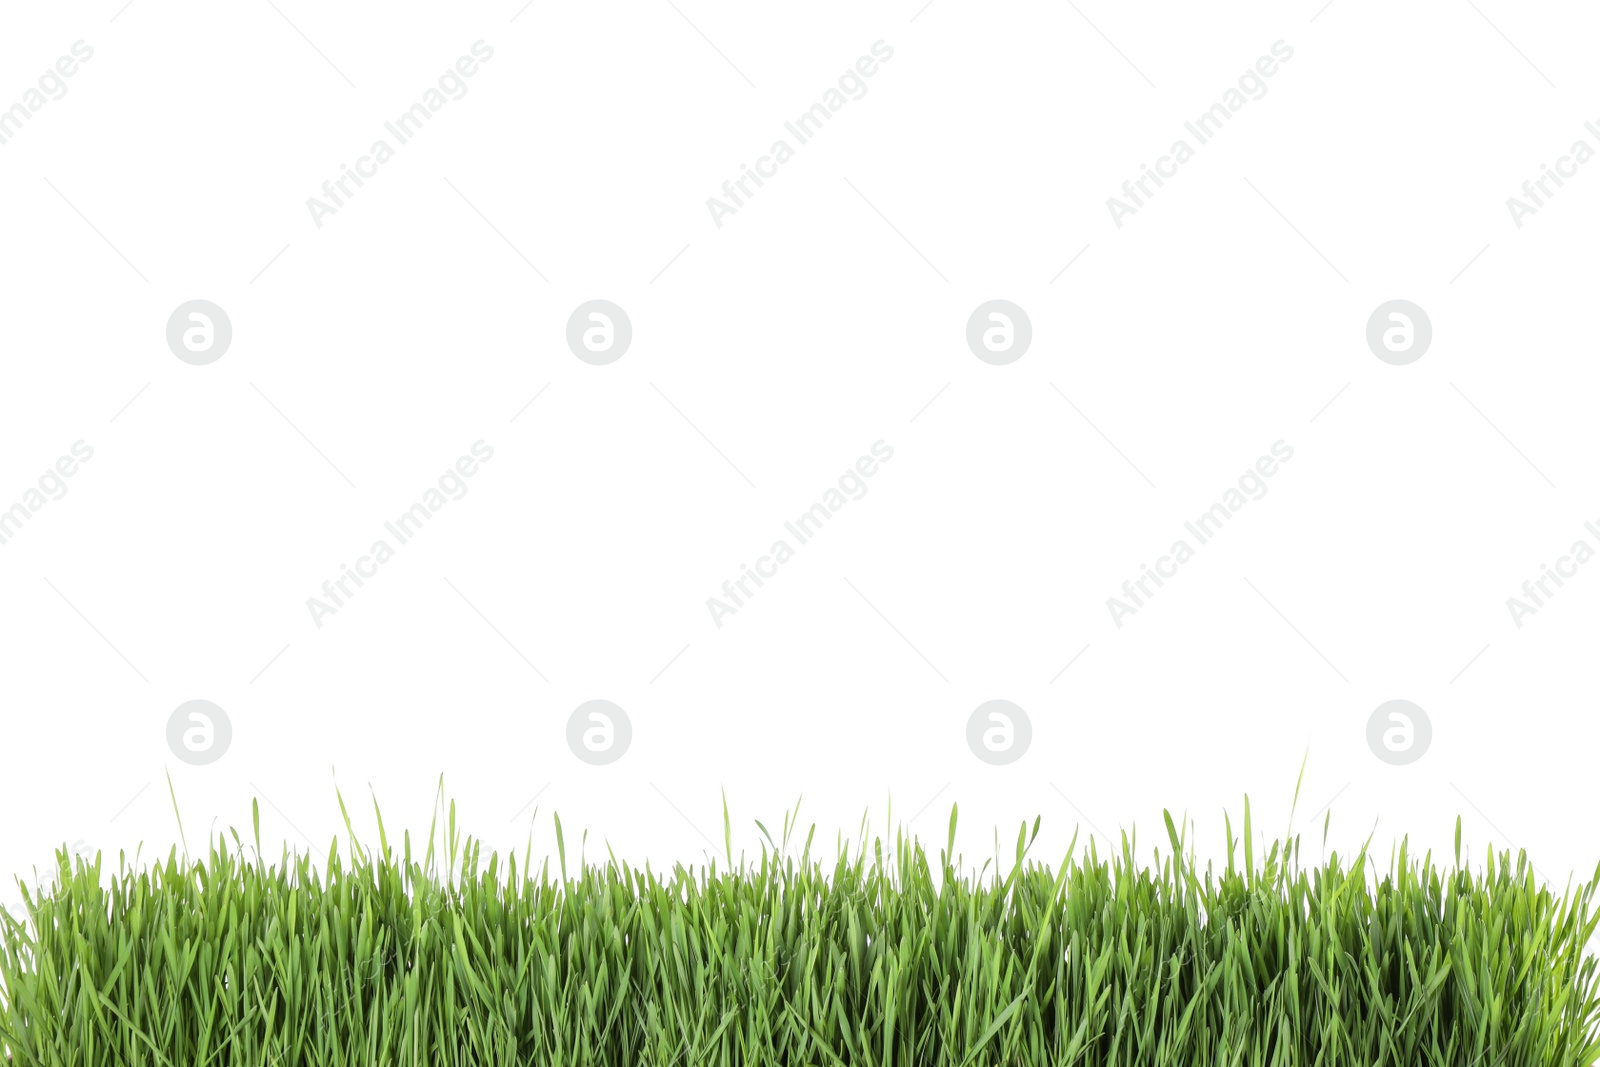 Photo of Fresh green grass on white background. Spring season